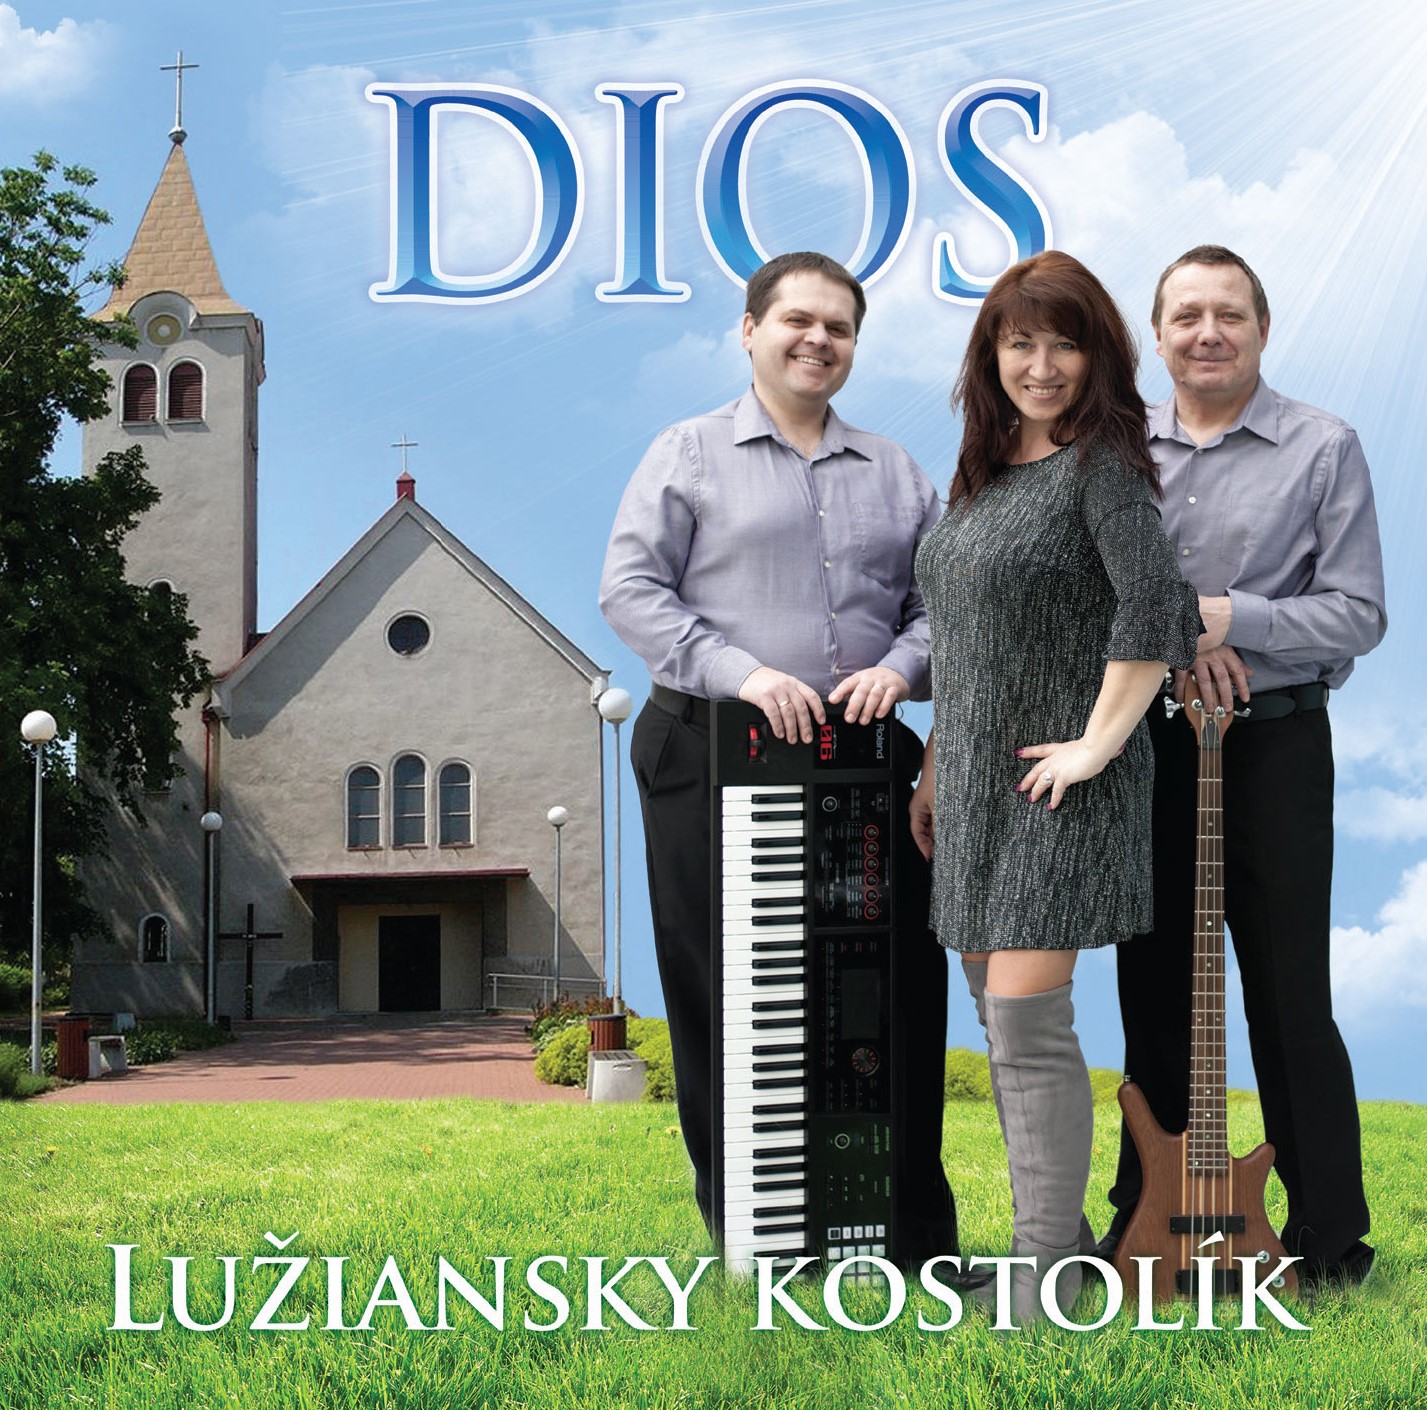 Dios - Lužiansky kostolik (cd)